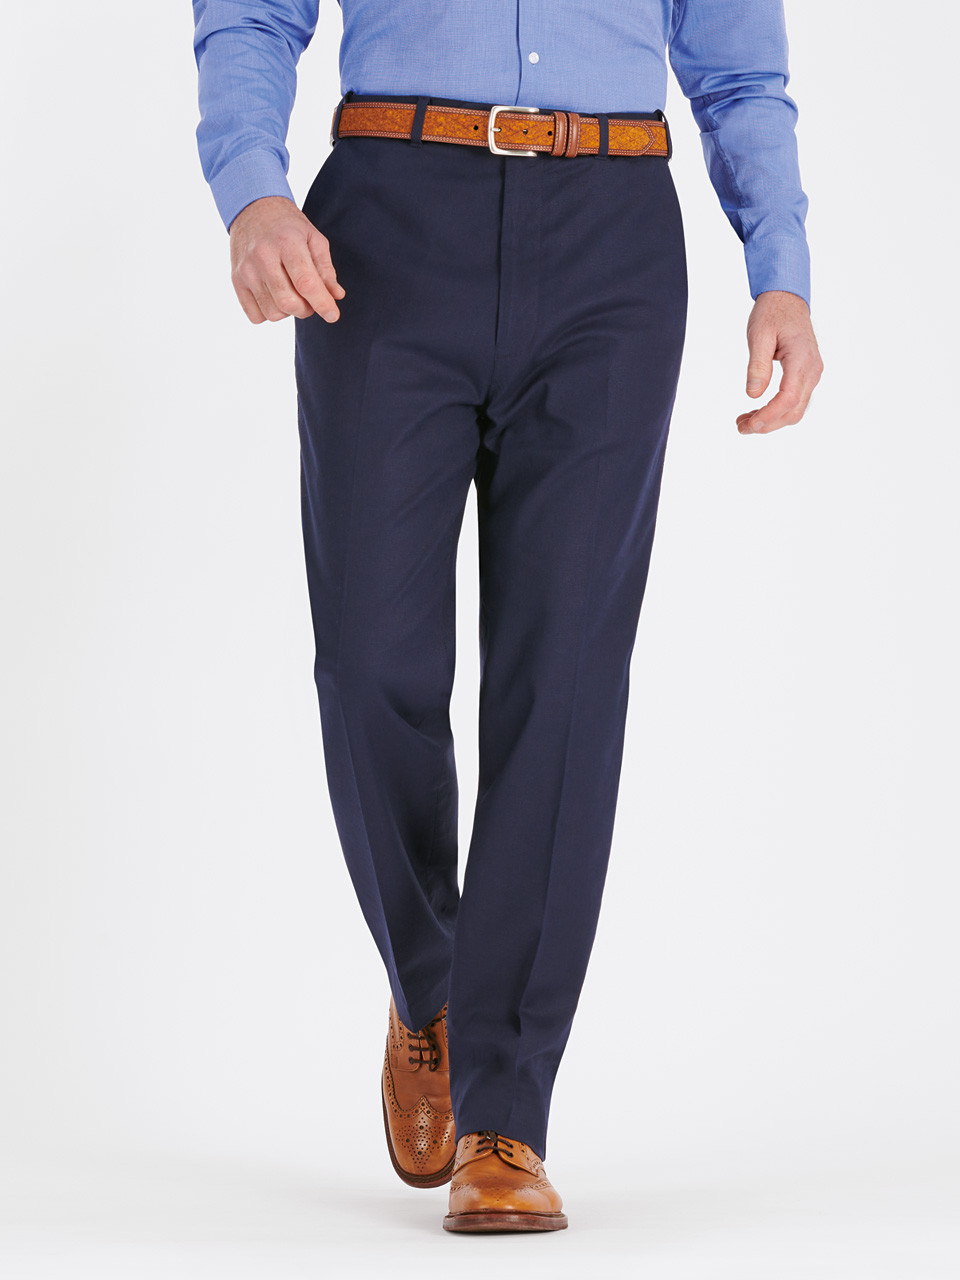 https://cdn11.bigcommerce.com/s-axz3gp0dm3/images/stencil/1280x1280/products/4356/20312/Mens-Navy-Blue-Linen-Cotton-Summer-Suit-Pants-MT63__30908.1680270716.jpg?c=1